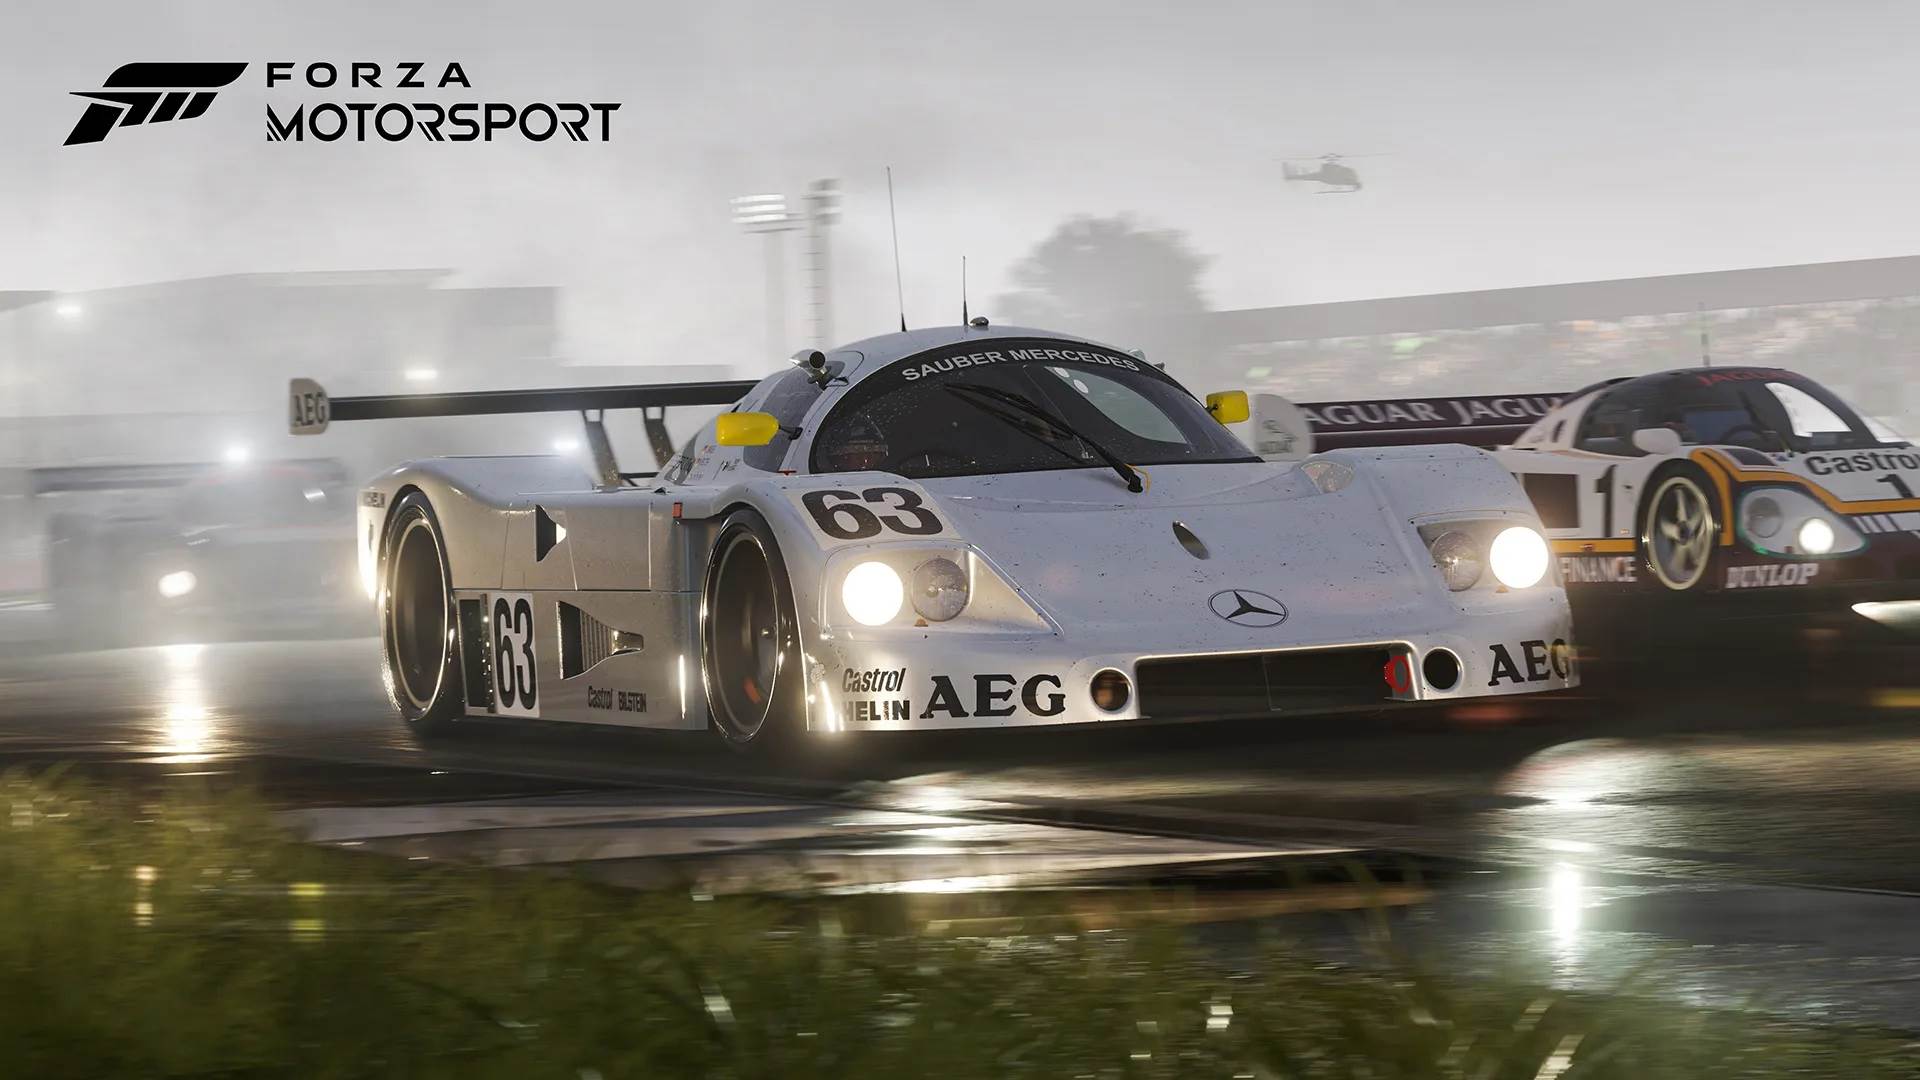  Forza Motorsport.jpg 